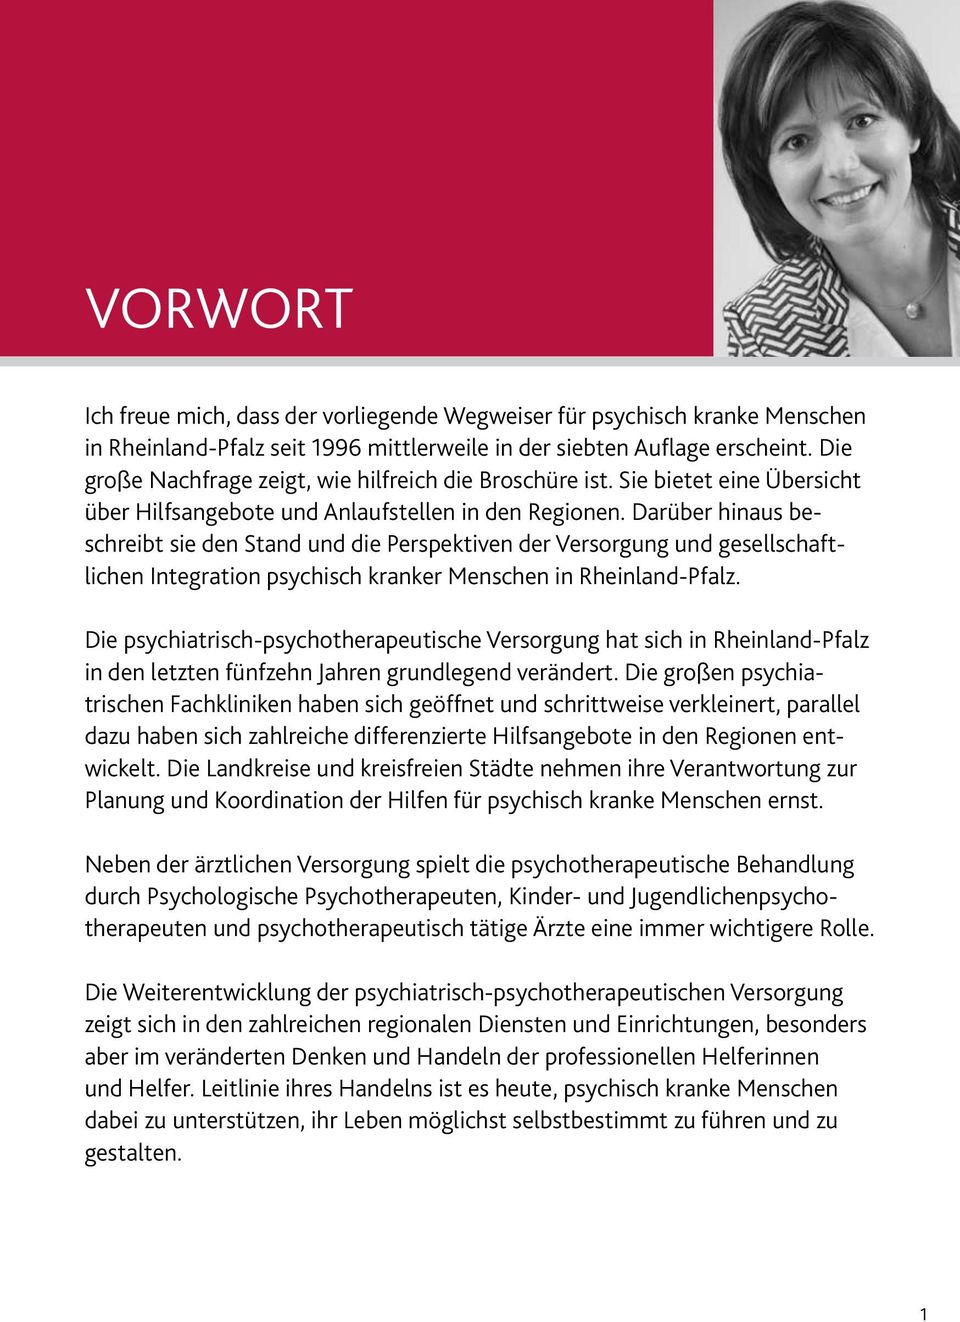 Darüber hinaus beschreibt sie den Stand und die Perspektiven der Versorgung und gesellschaftlichen Integration psychisch kranker Menschen in Rheinland-Pfalz.